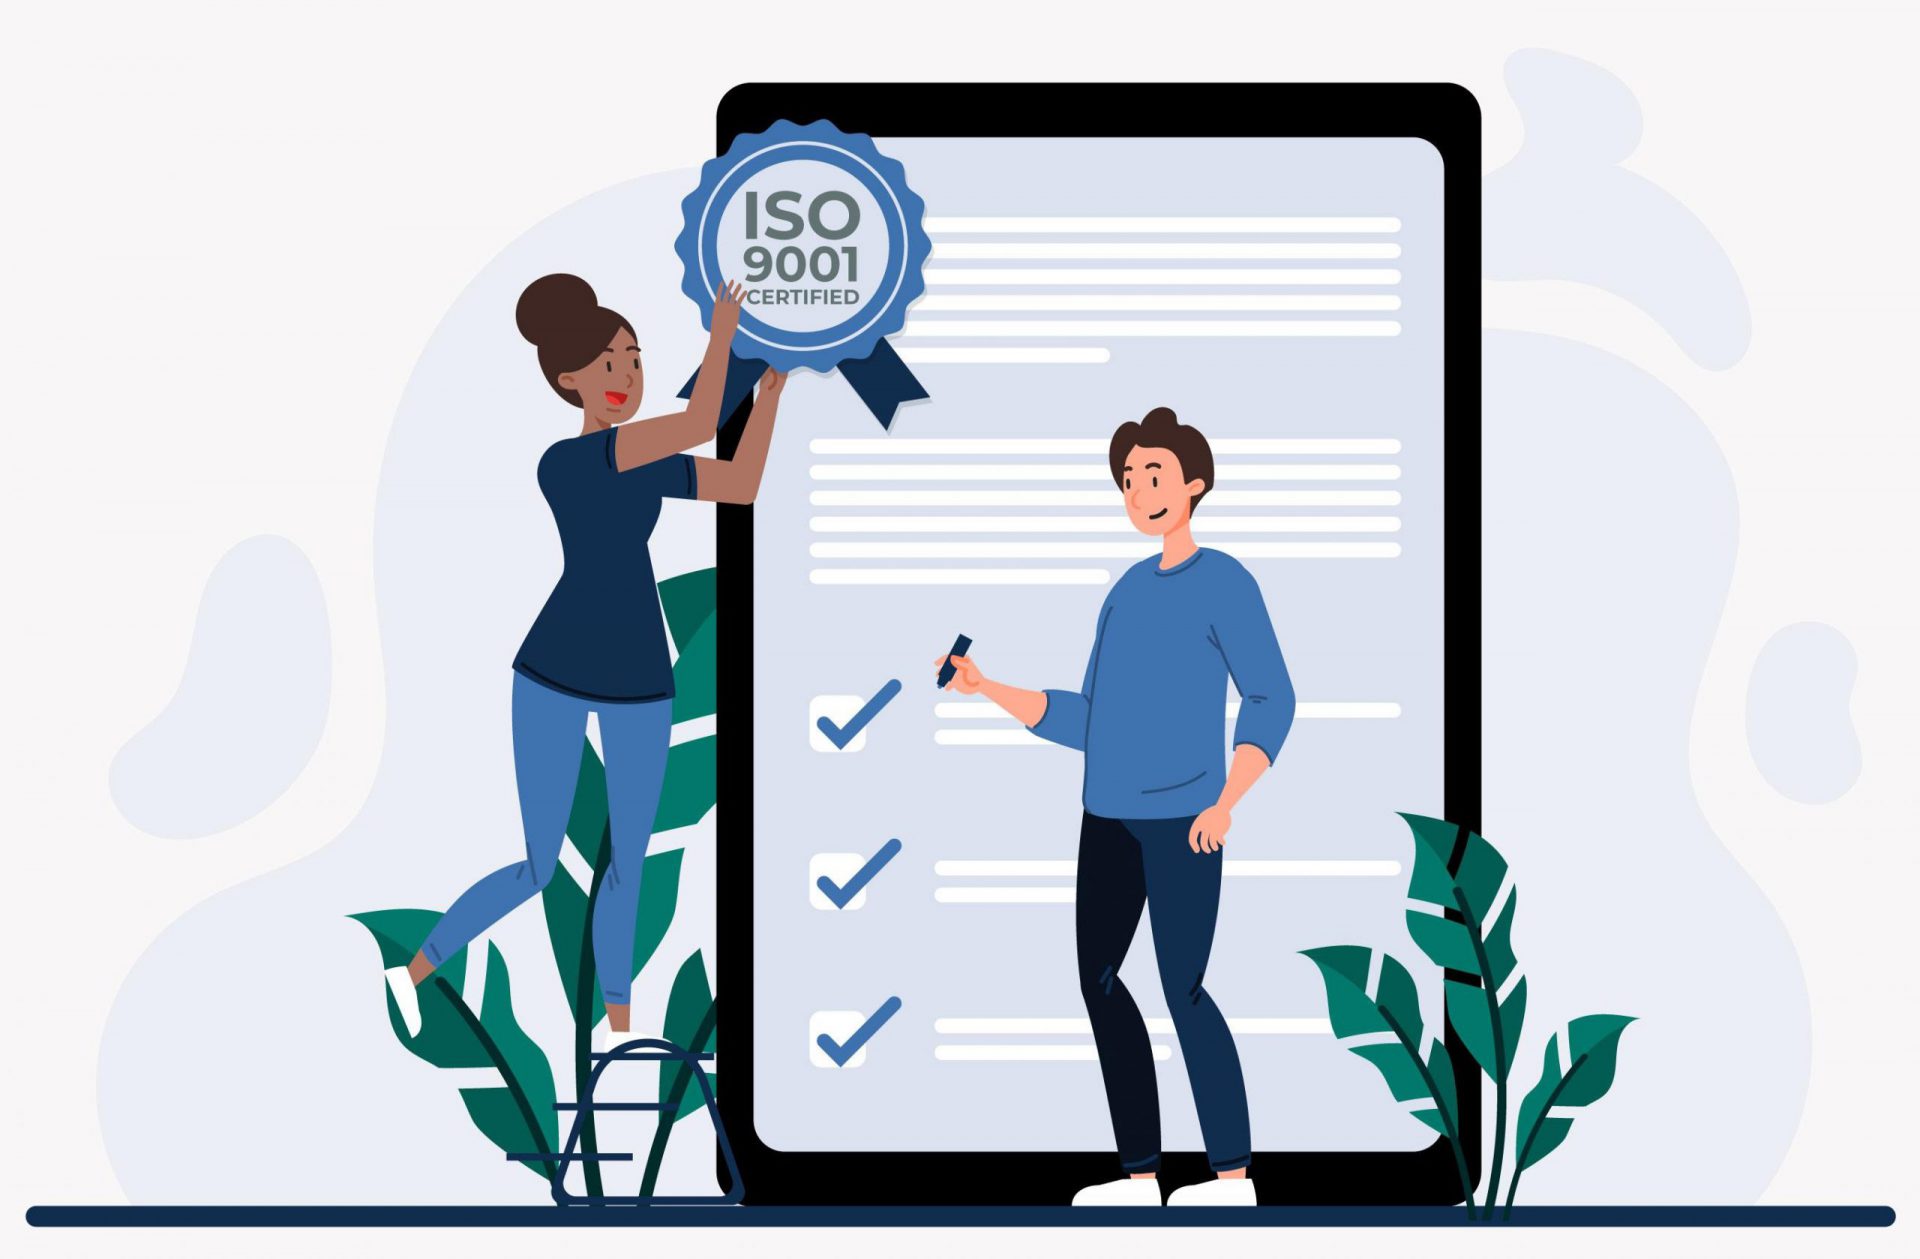 ISO 9001 banner design